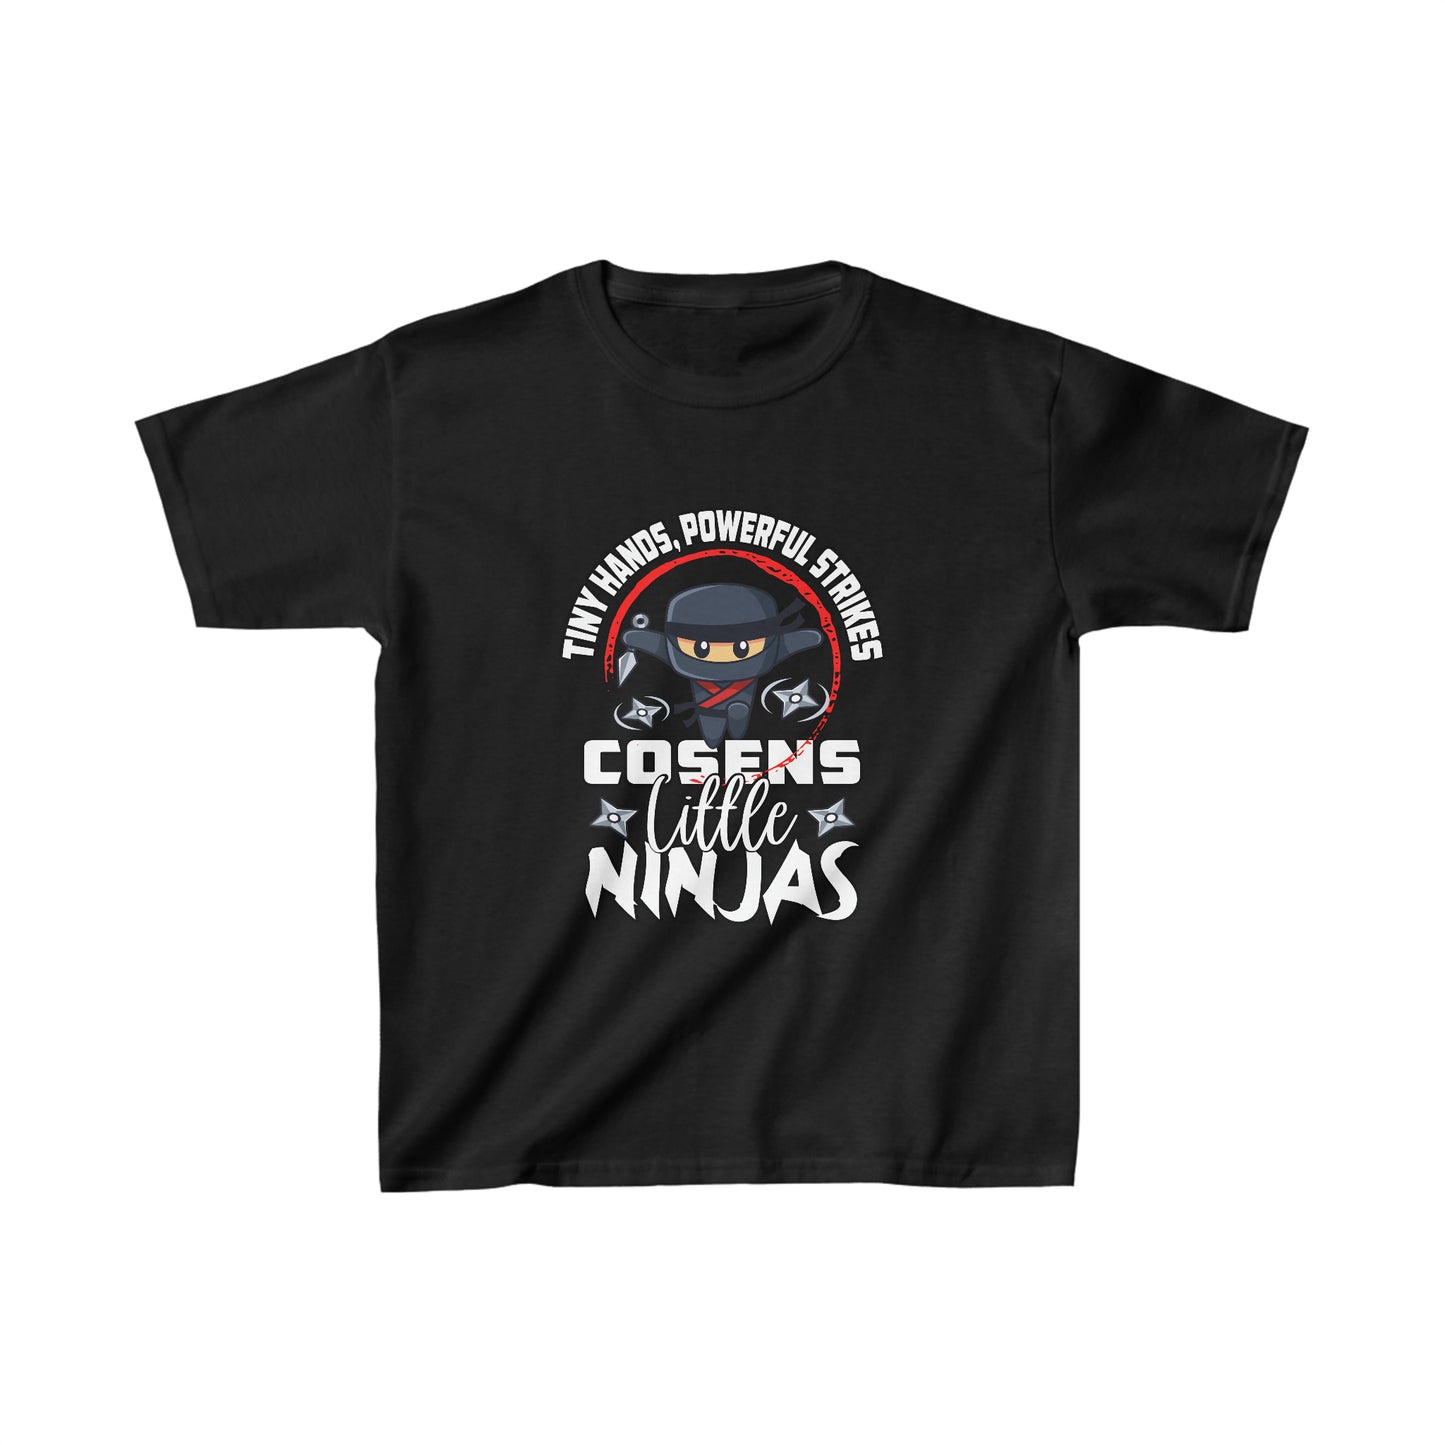 Little Ninjas Kids Cosens Martial Arts Heavy Cotton™ Tee